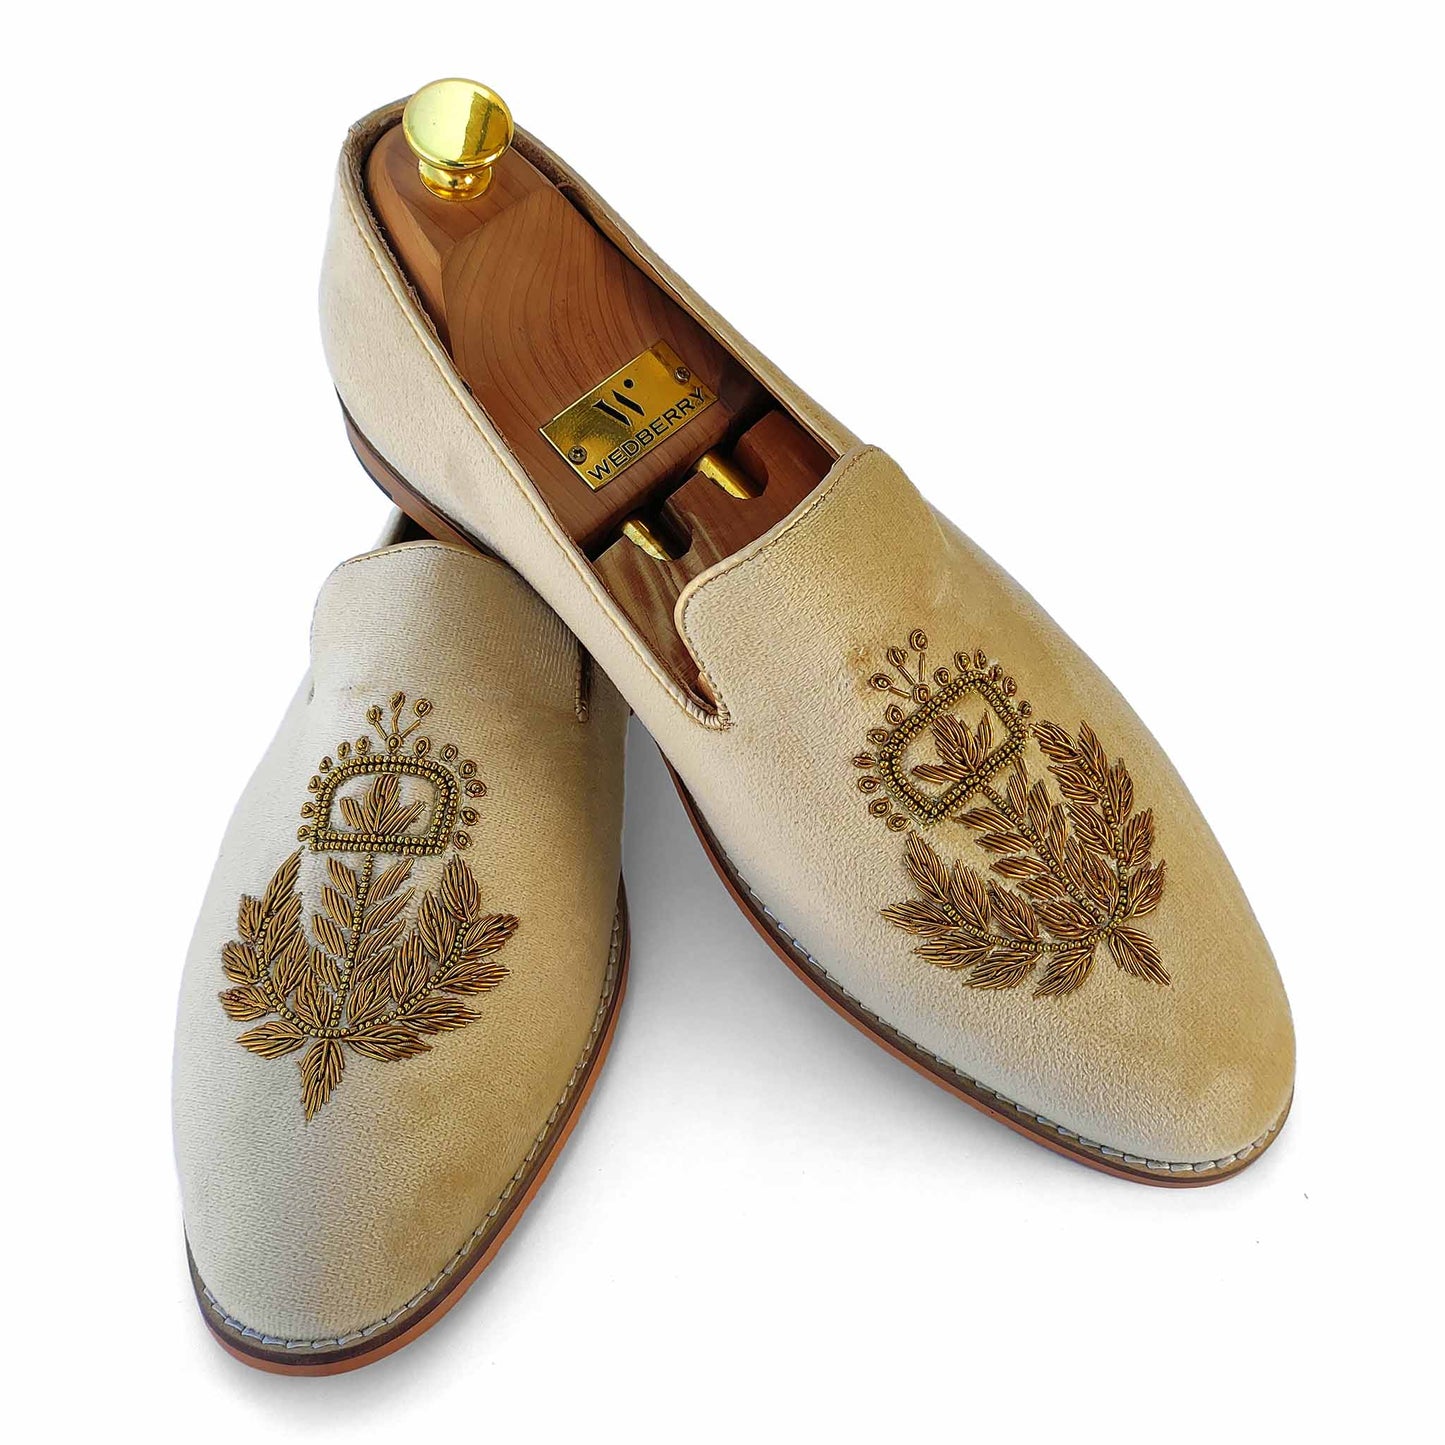 Creme Velvet with Antique Gold Zardozi Handwork Wedding Shoes Ethnic Loafers Nagra Slipon Mojri for Men